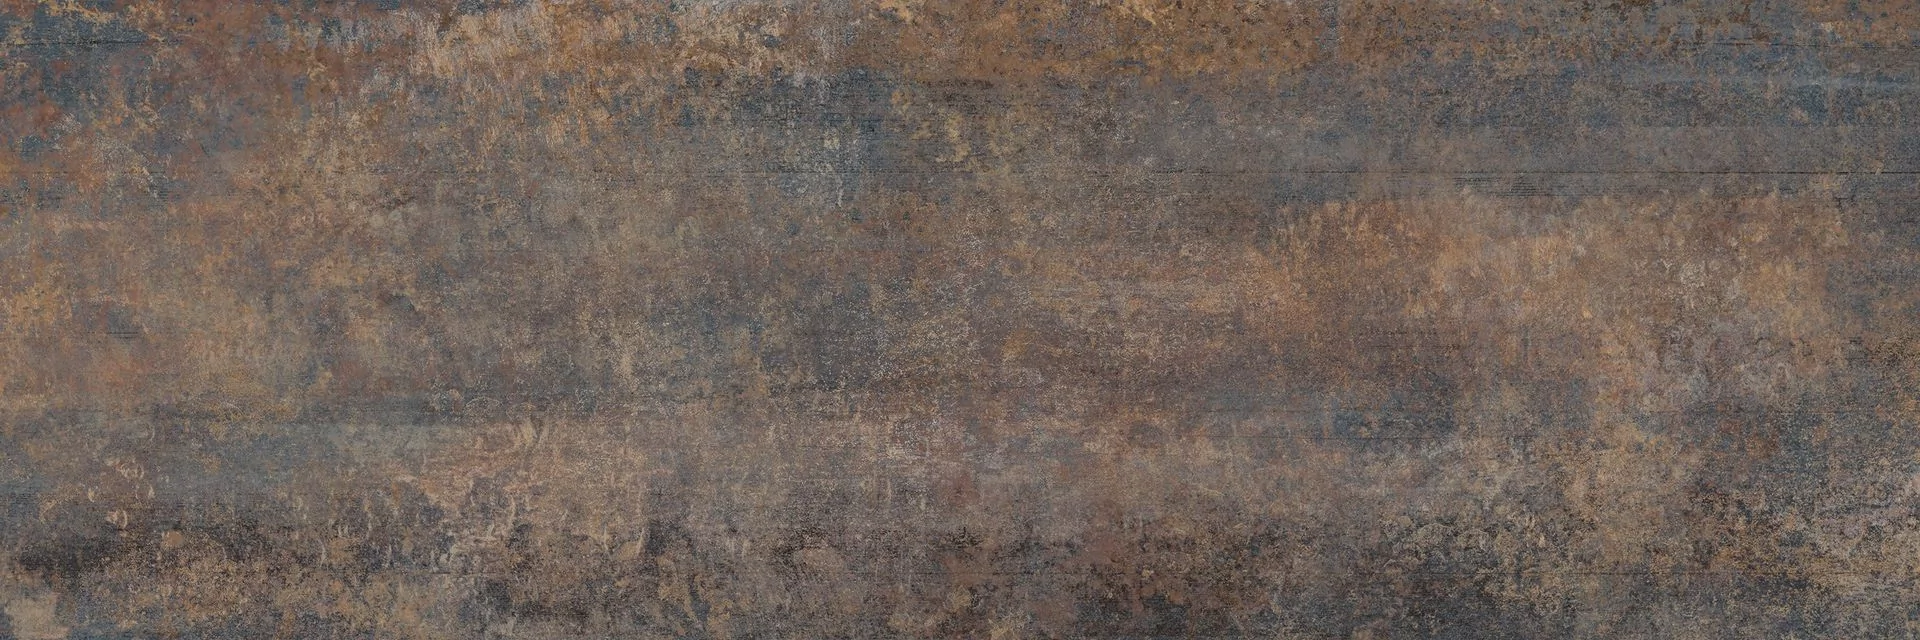 Płytka ścienna Kalahari Rust 25x75 cm 1.3m2